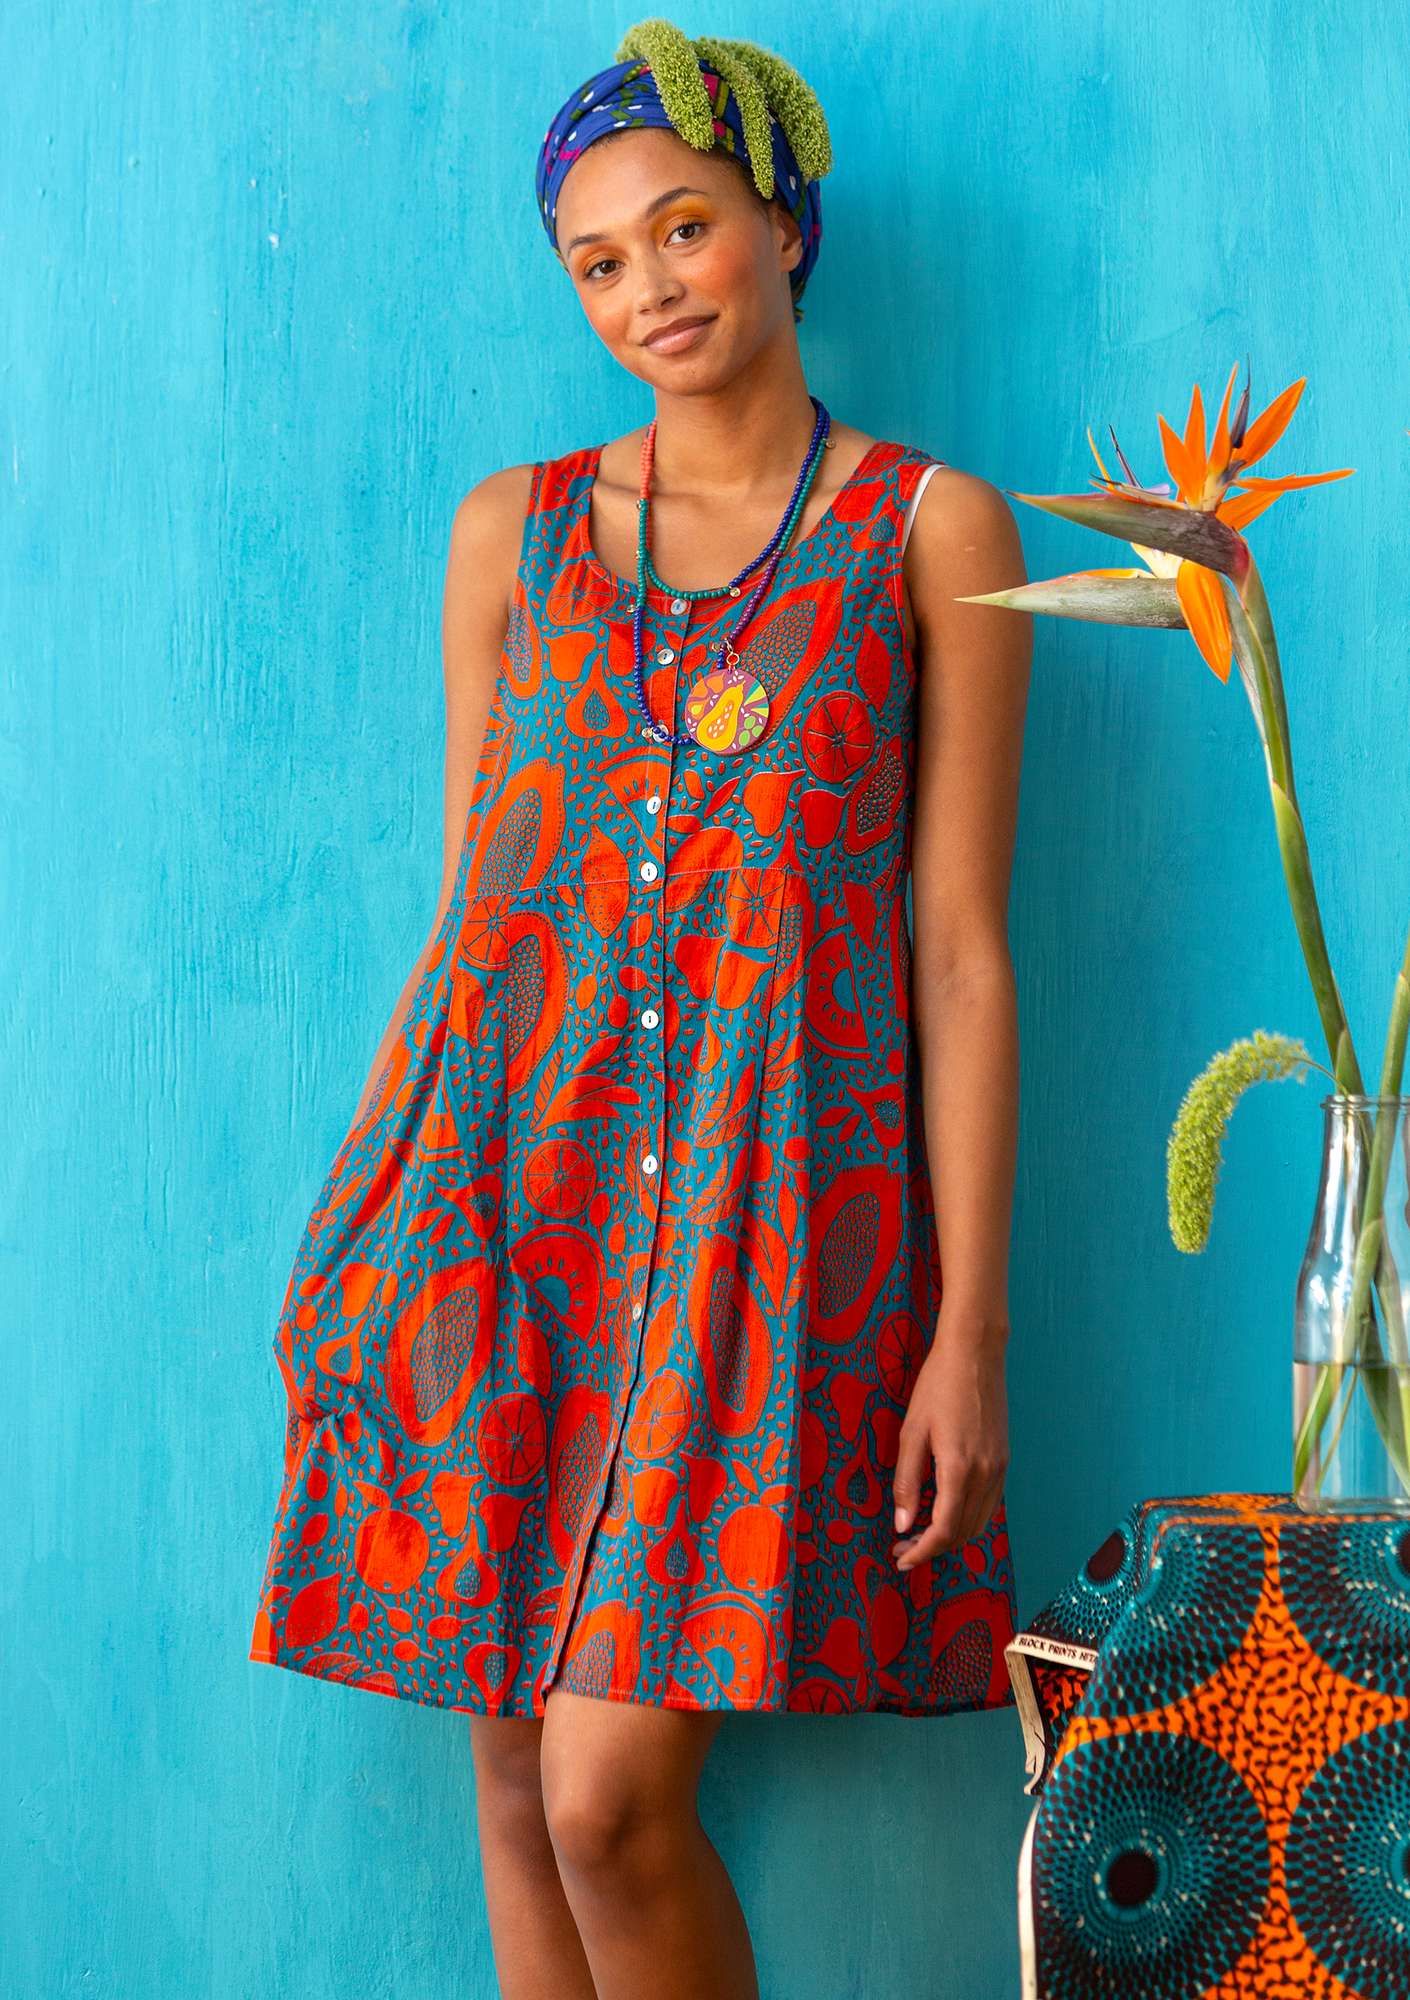 Vevd kjole «Marimba» i økologisk bomull lavarød